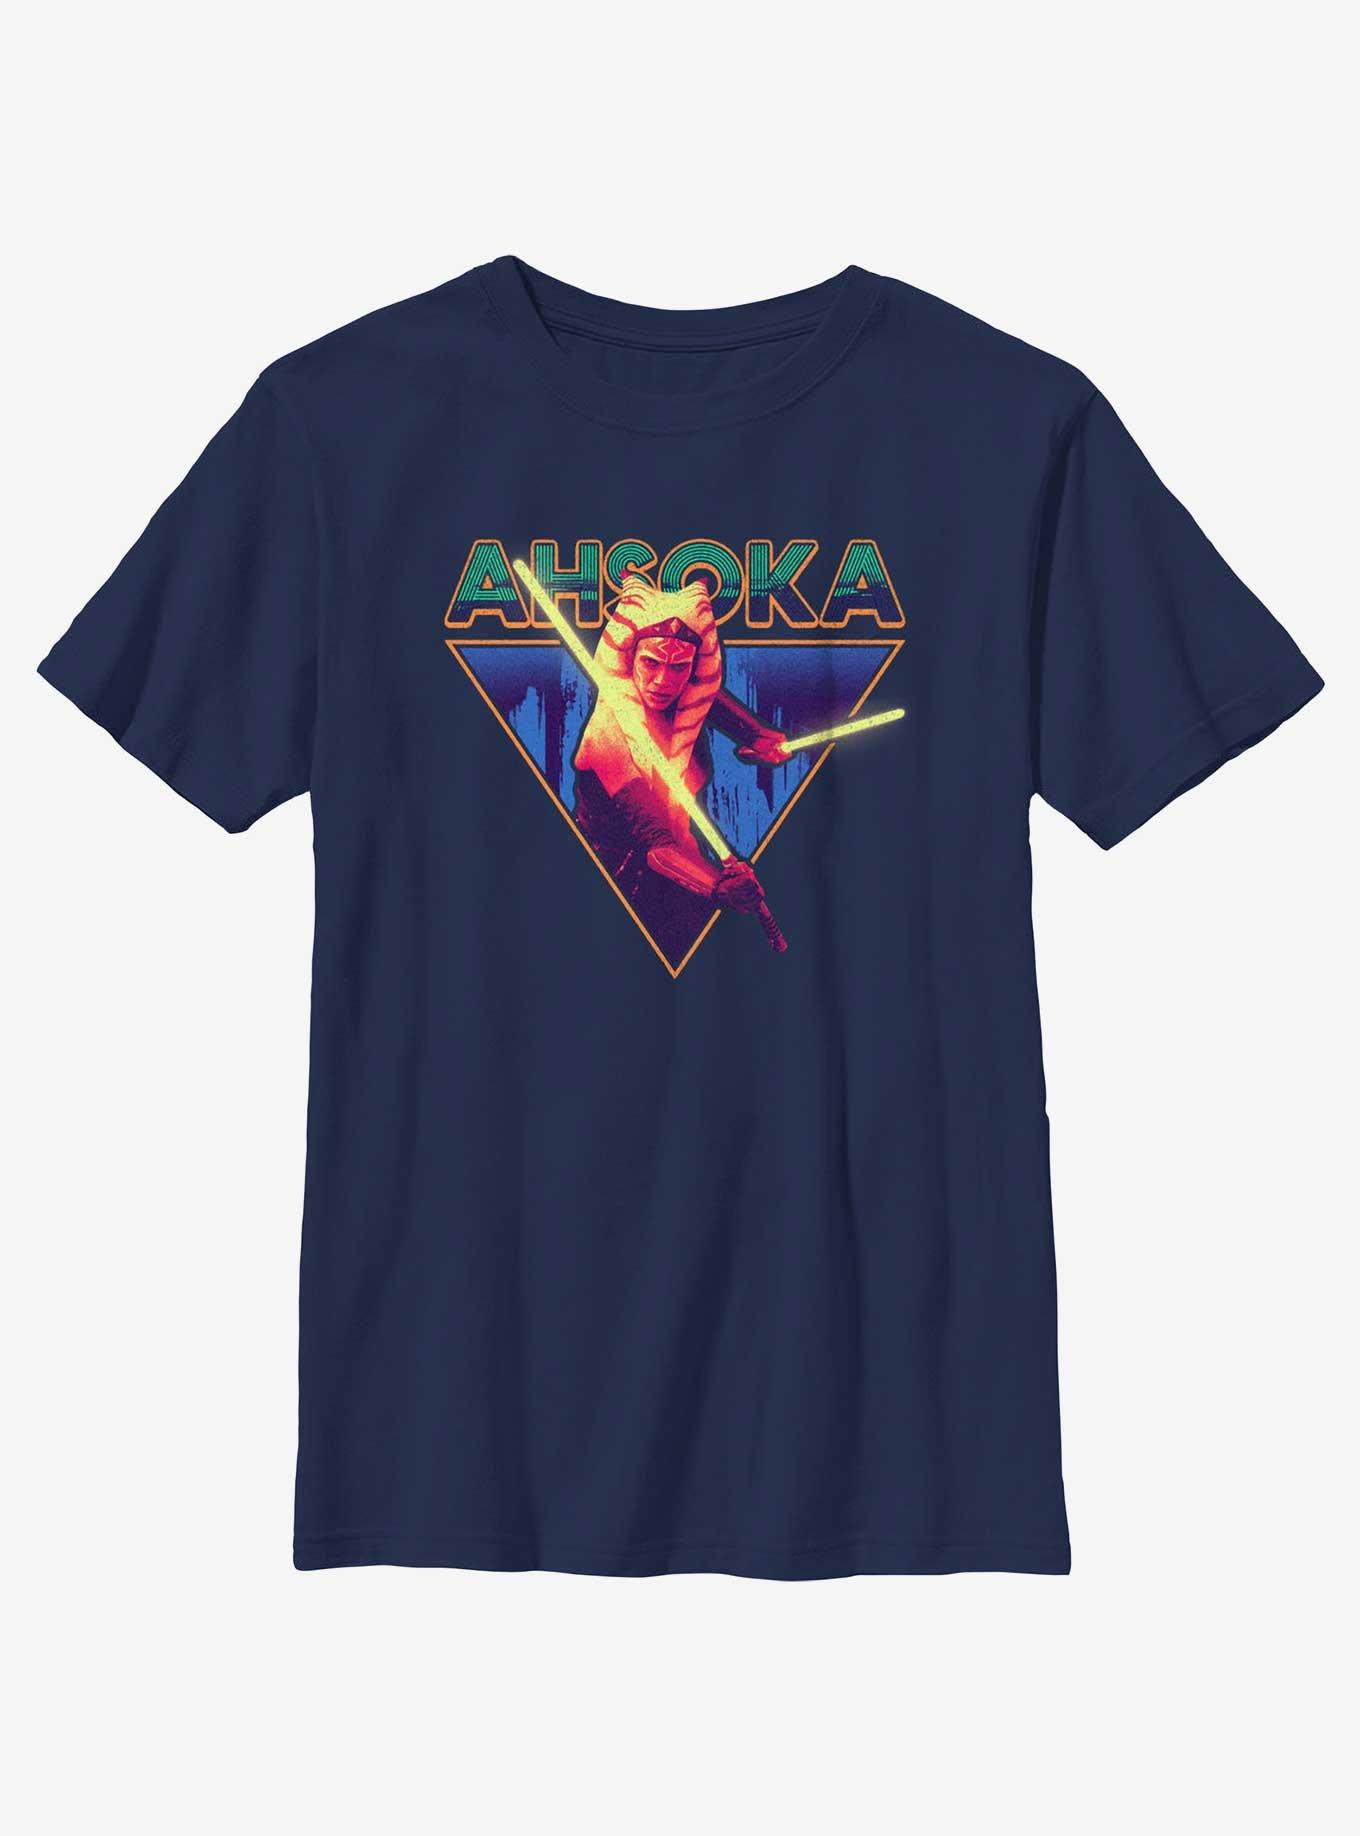 Star Wars Ahsoka Blazing Saber Youth T-Shirt, NAVY, hi-res